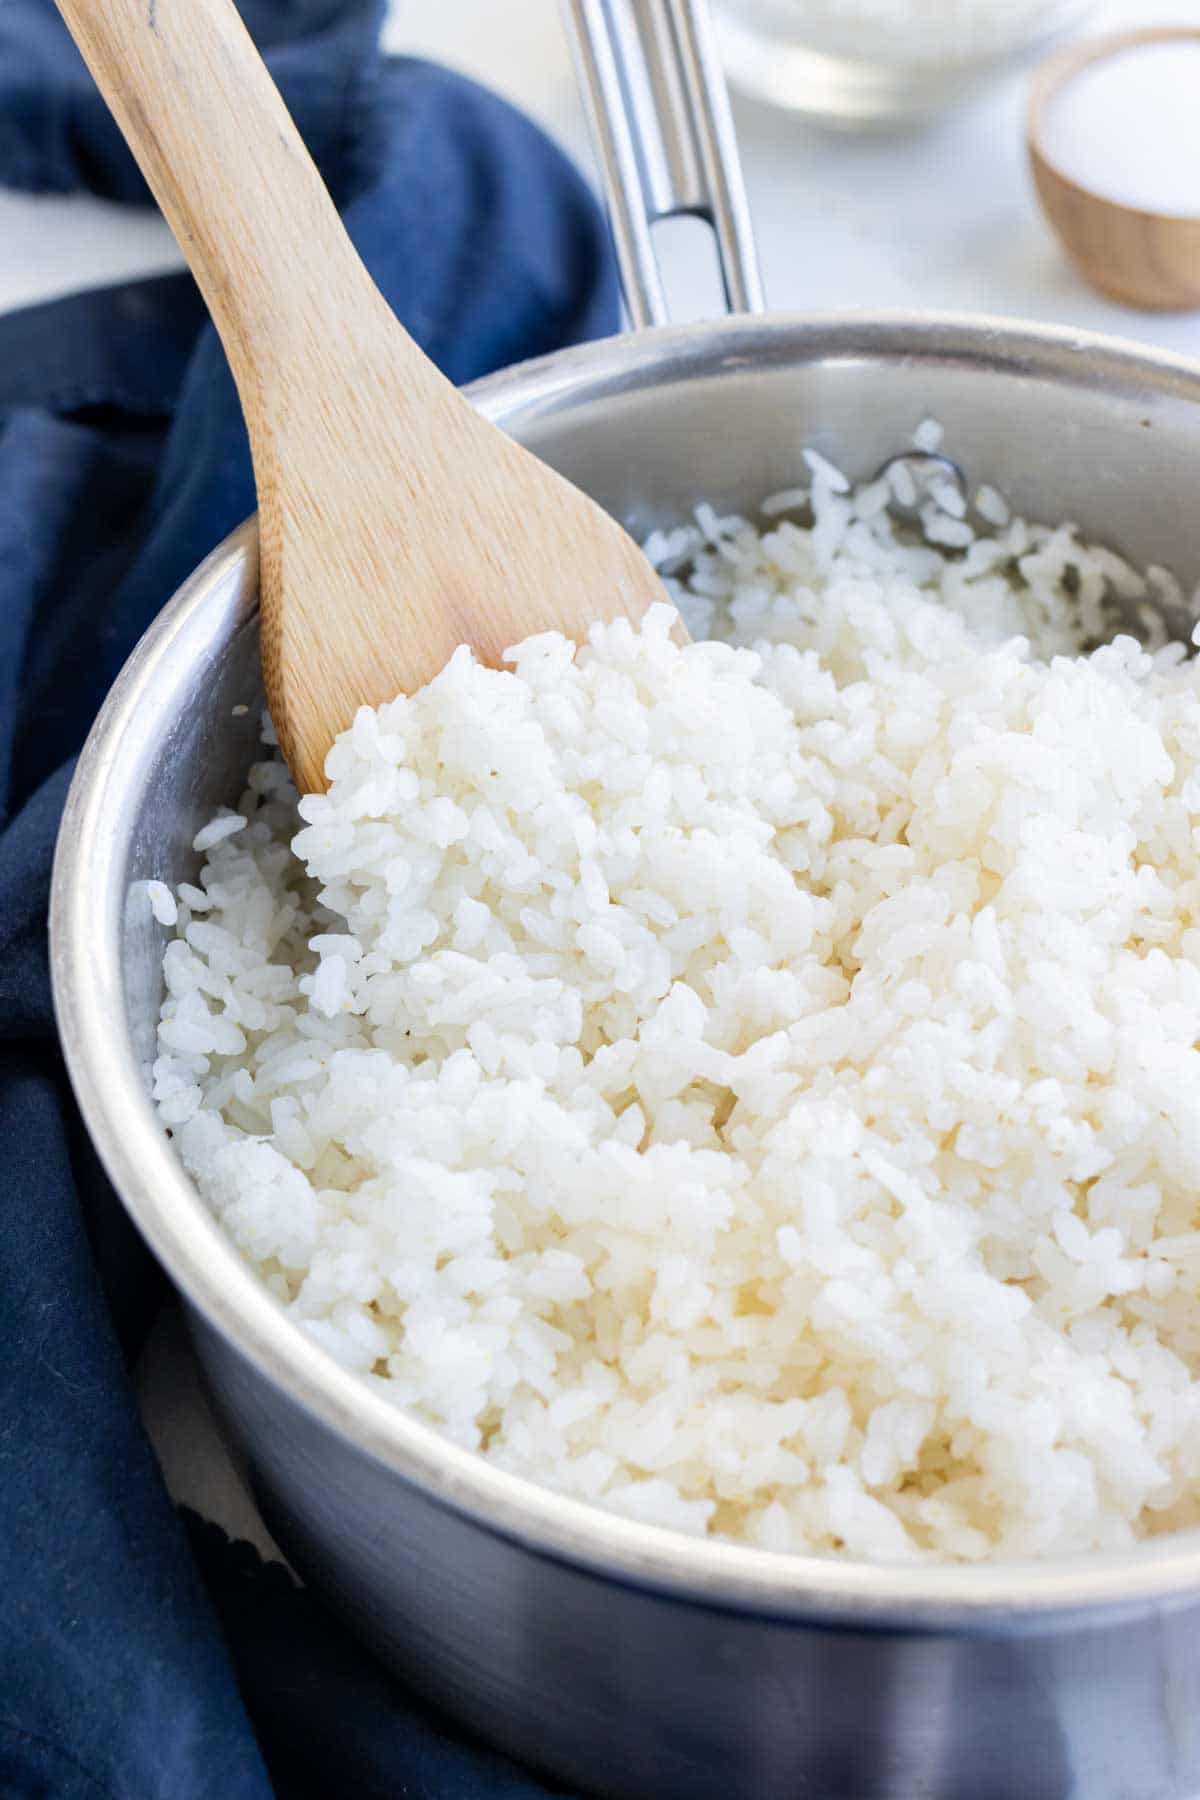 https://www.evolvingtable.com/wp-content/uploads/2022/04/Sushi-Rice-21.jpg